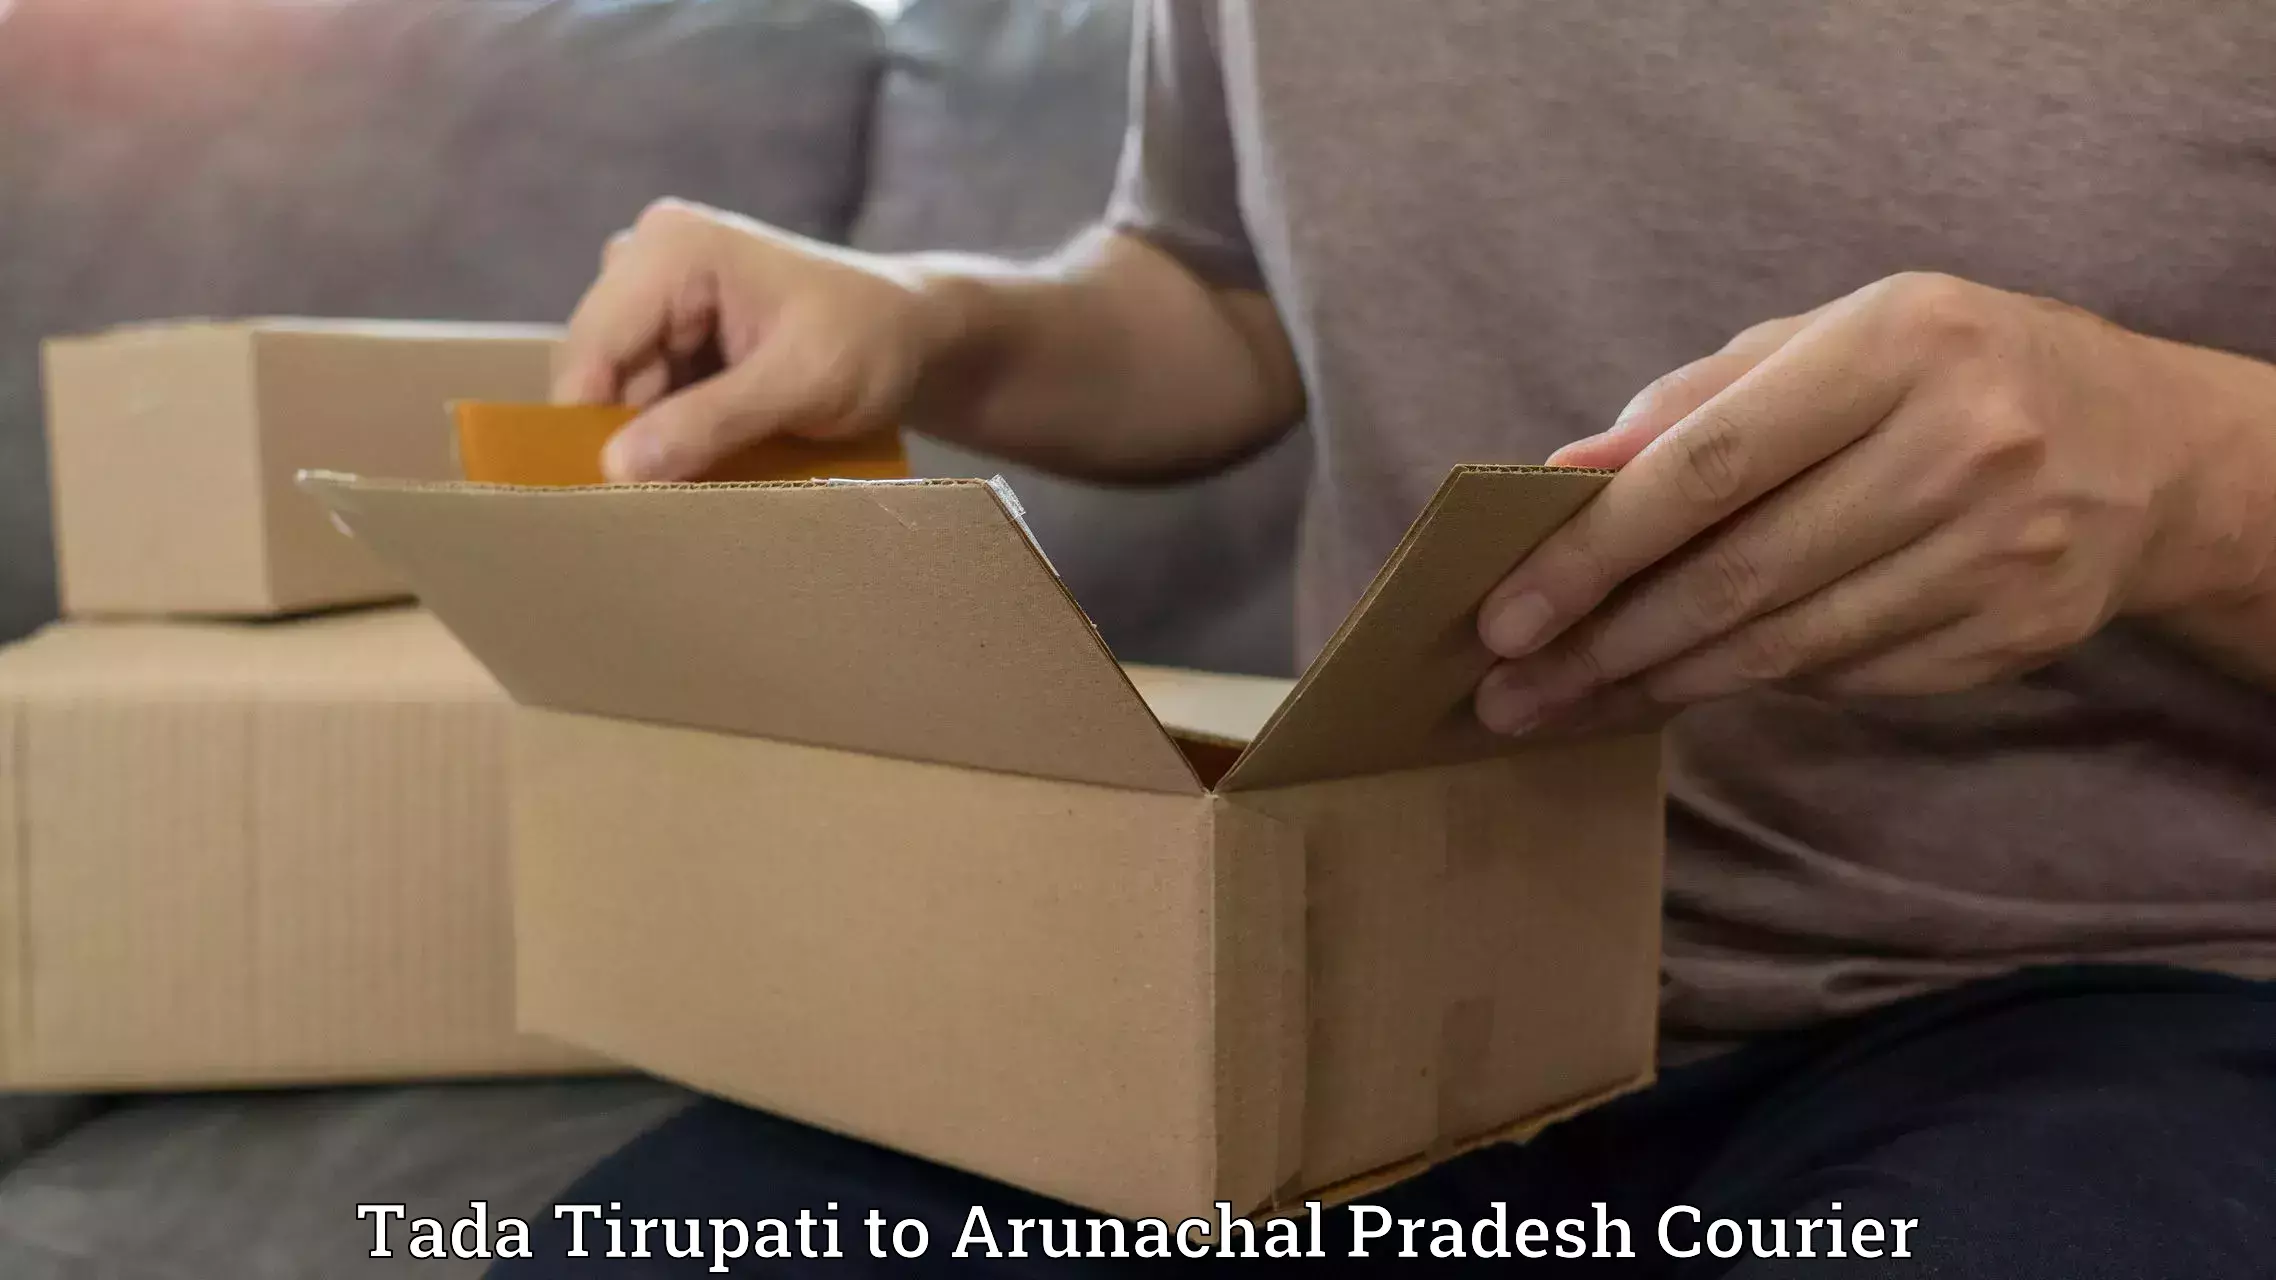 Premium courier services Tada Tirupati to Kurung Kumey